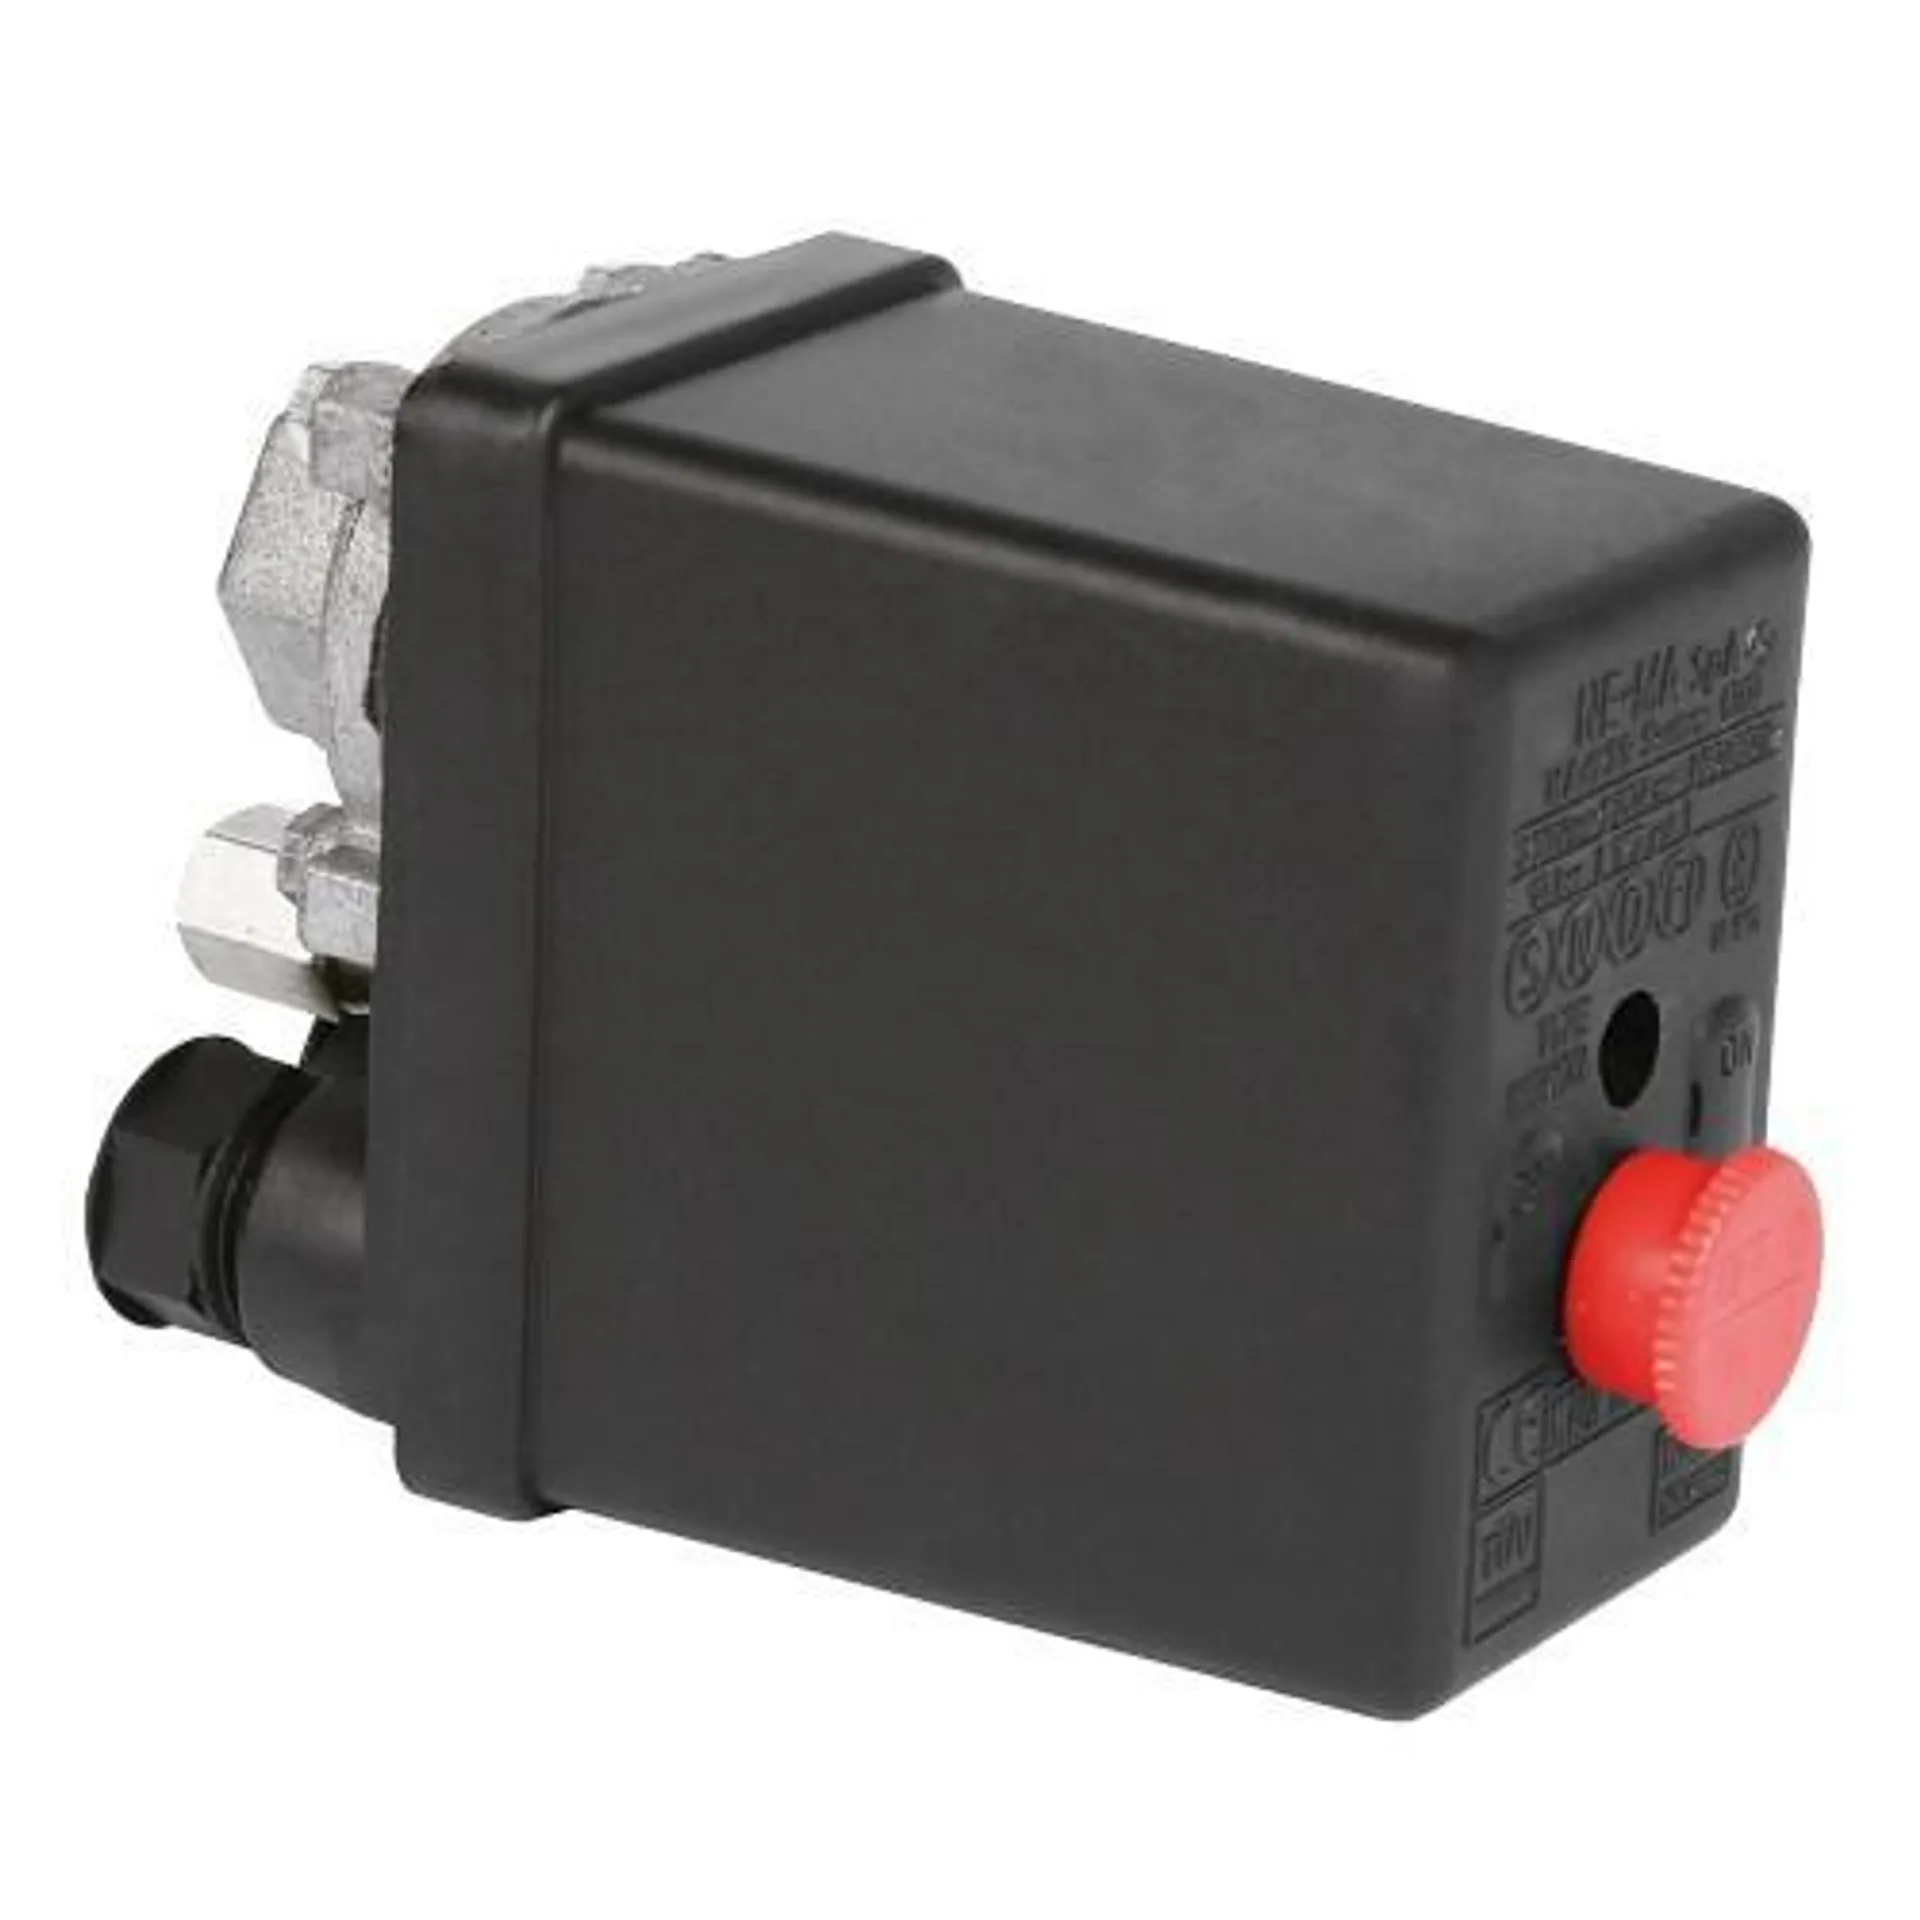 02314 Mignon 1-Way Pressure Switch - 1Ph